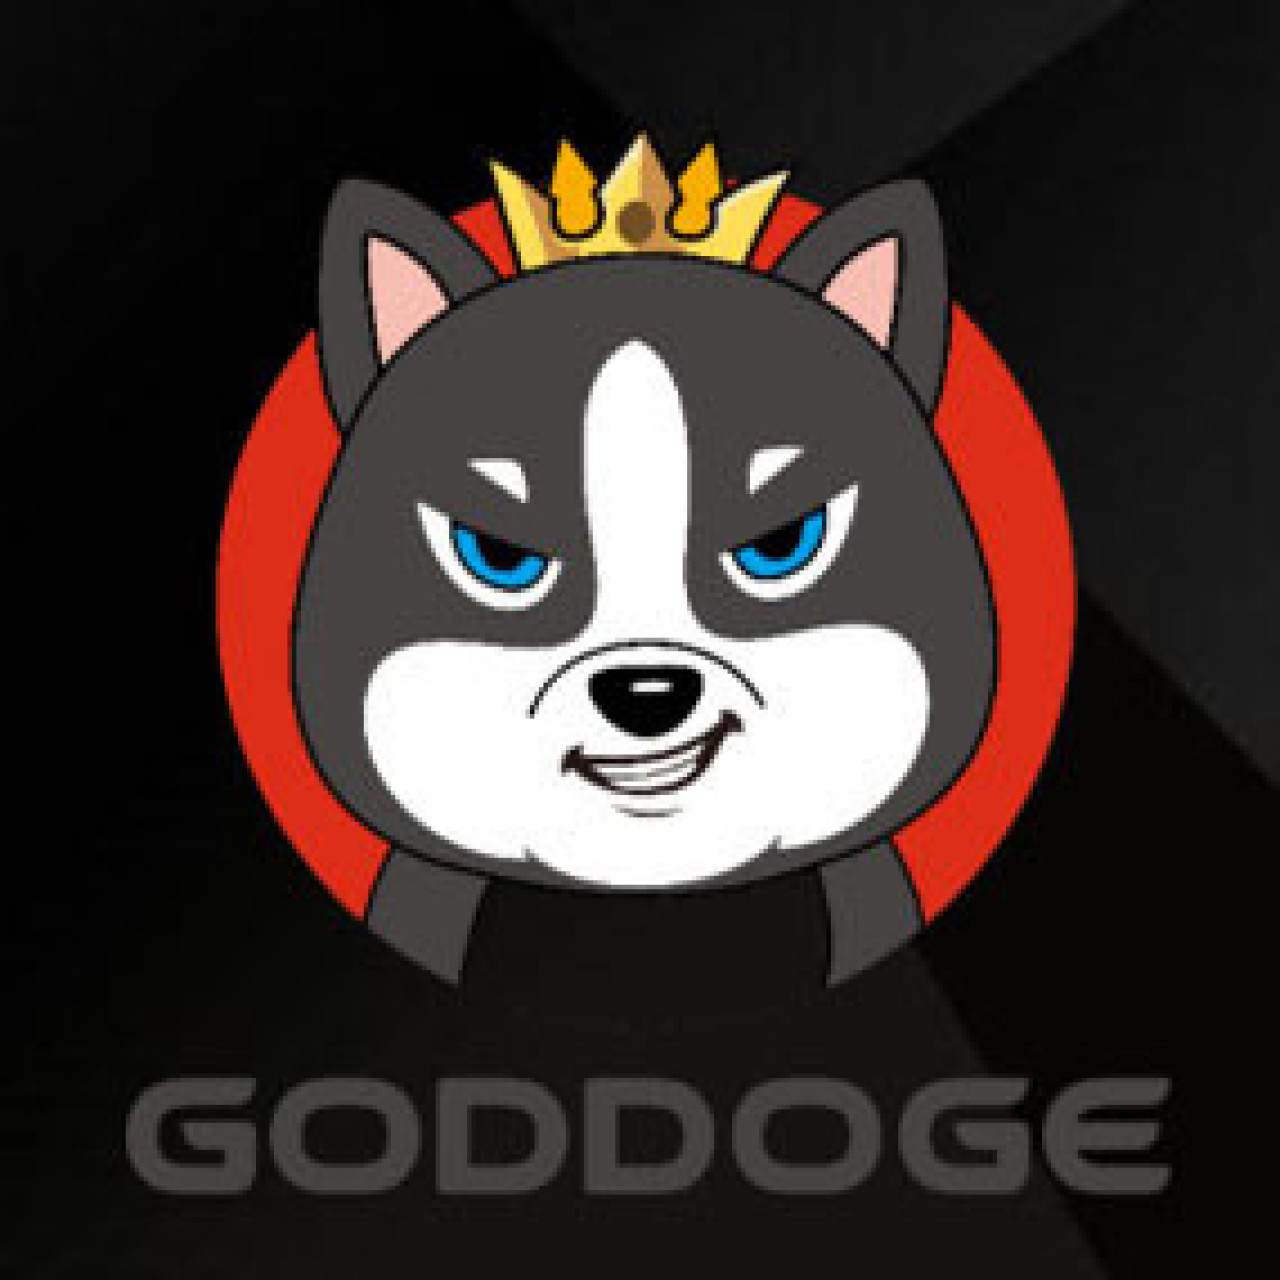 logo-goddoge_large